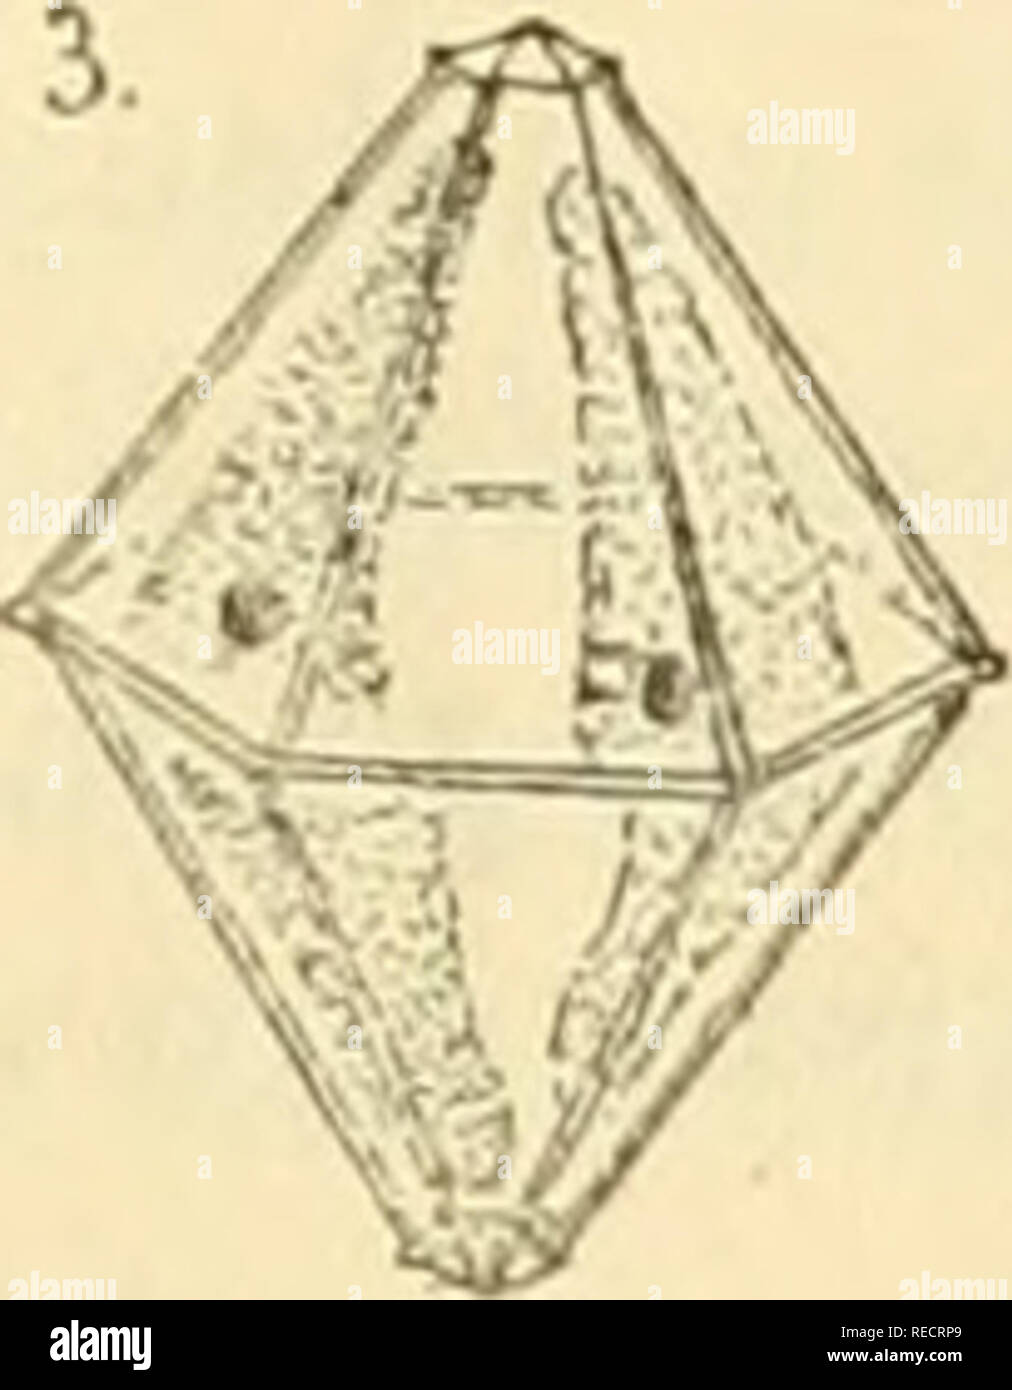 comptesrendusheb1171171893acad. es naturelles. affectent une forme  gÃ©omÃ©trique trÃ¨s-remarquable {fig. 2); l'enveloppe est en effet formÃ©e  de deux pyramides hexagonales accolÃ©es par leurs bases et dont le sommet  un peu tron([uÃ© est